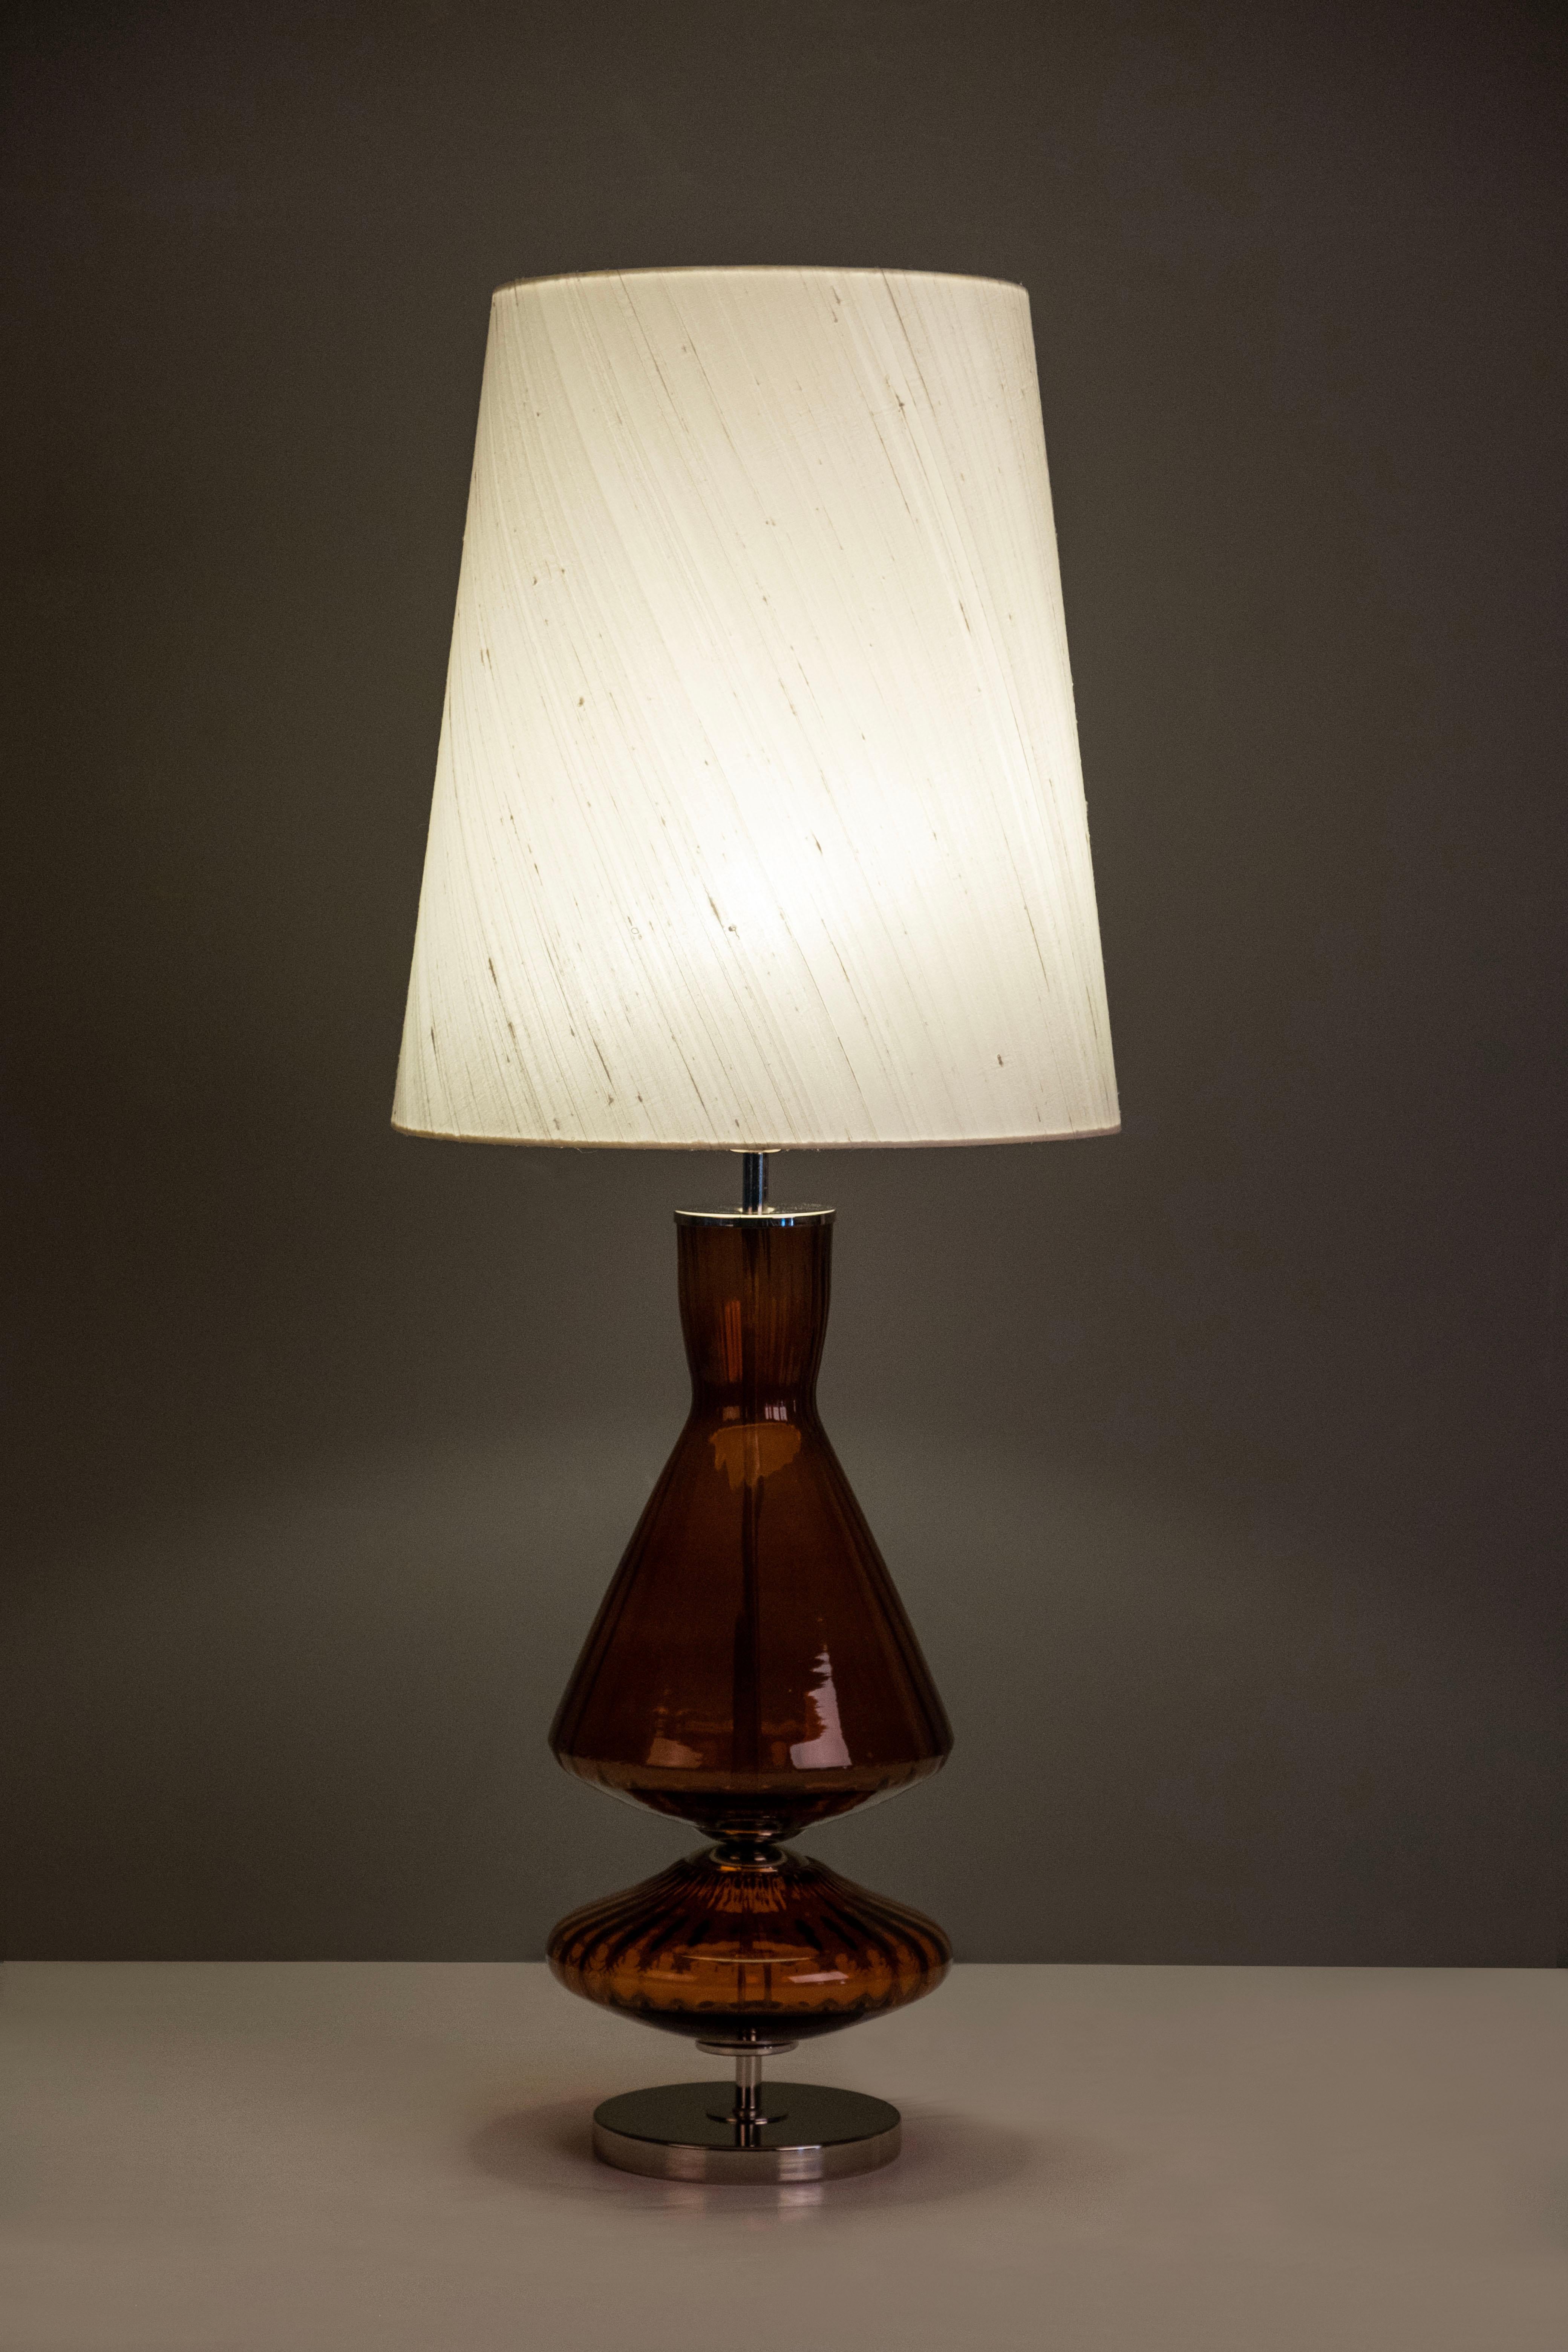 Satz von 2 Assis Tischlampen, Modern Collection, Handgefertigt in Portugal - Europa von GF Modern.

Assis ist eine elegante Tischleuchte und eine attraktive Ergänzung für ein modernes Zuhause. Das Ambarglas und der polierte Edelstahl verbinden